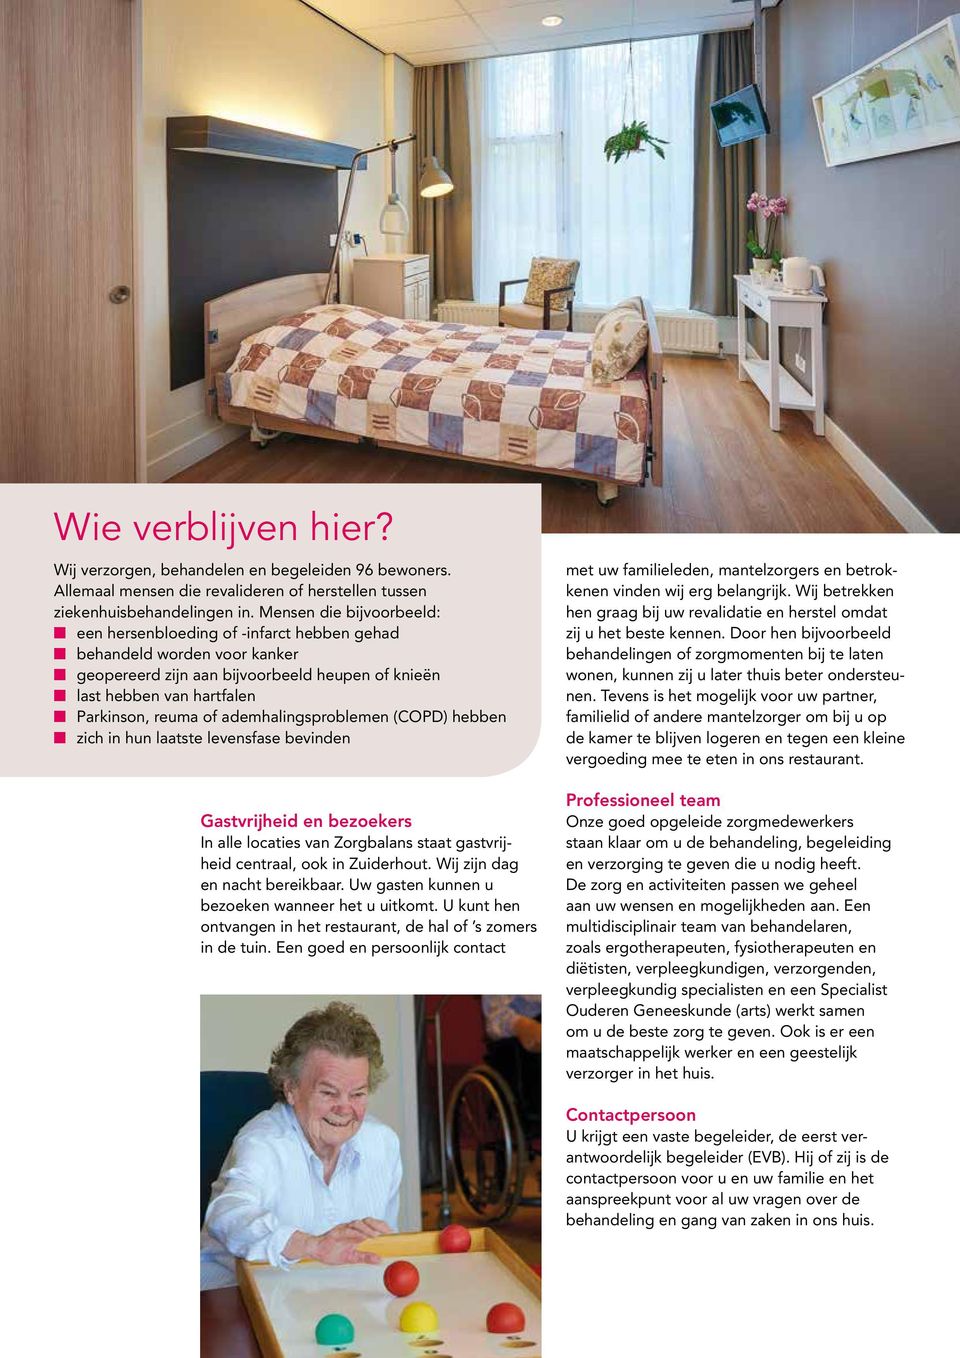 reuma of ademhalingsproblemen (COPD) hebben n zich in hun laatste levensfase bevinden Gastvrijheid en bezoekers In alle locaties van Zorgbalans staat gastvrijheid centraal, ook in Zuiderhout.